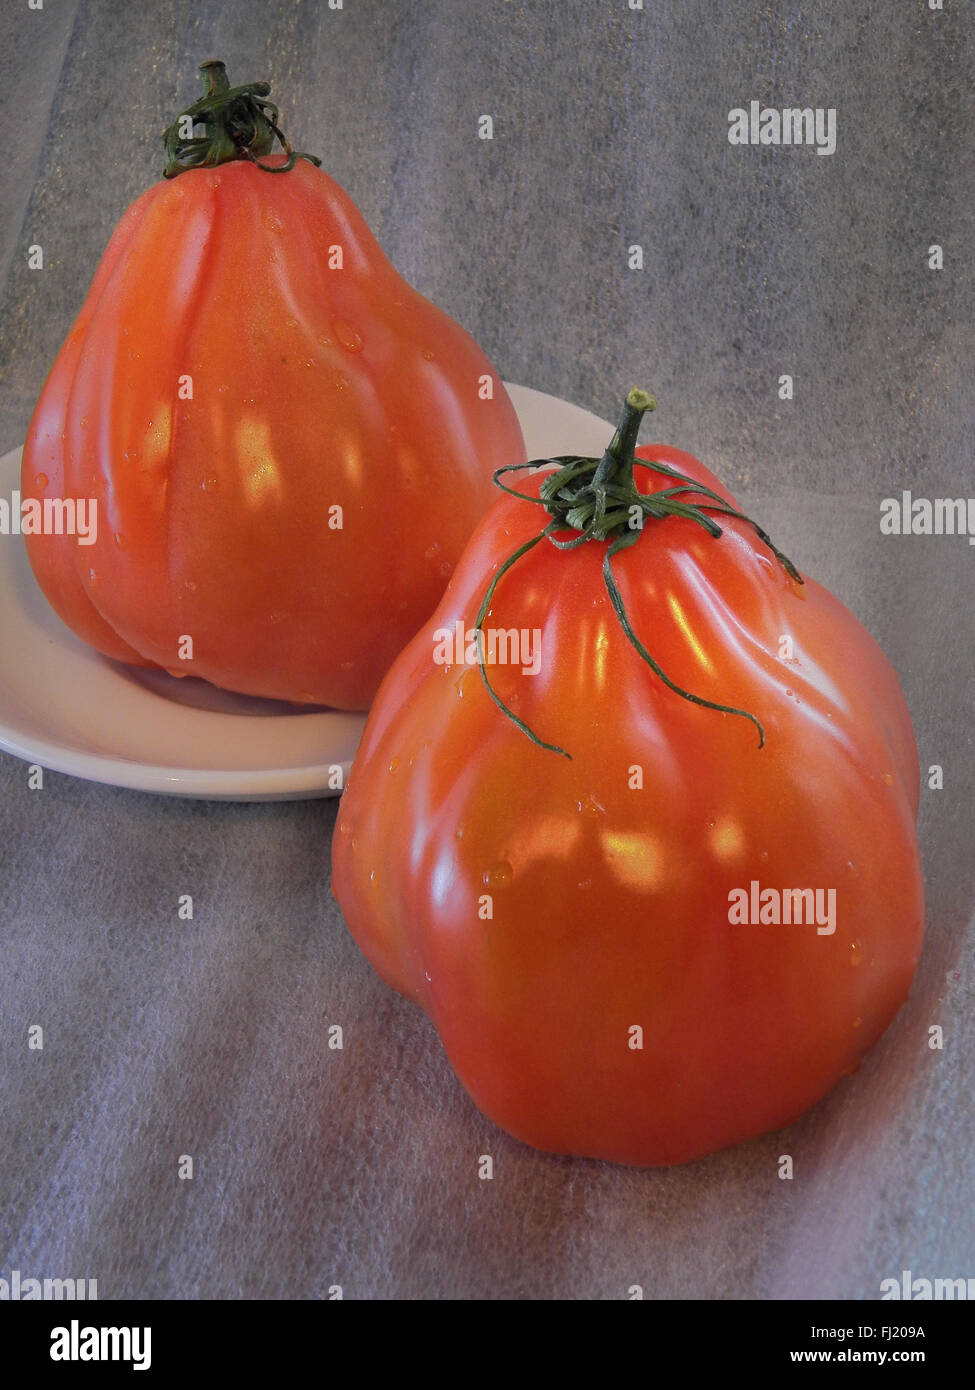 Les tomates coeur têtu rouge. Juste lavé. Sur la plaque Banque D'Images